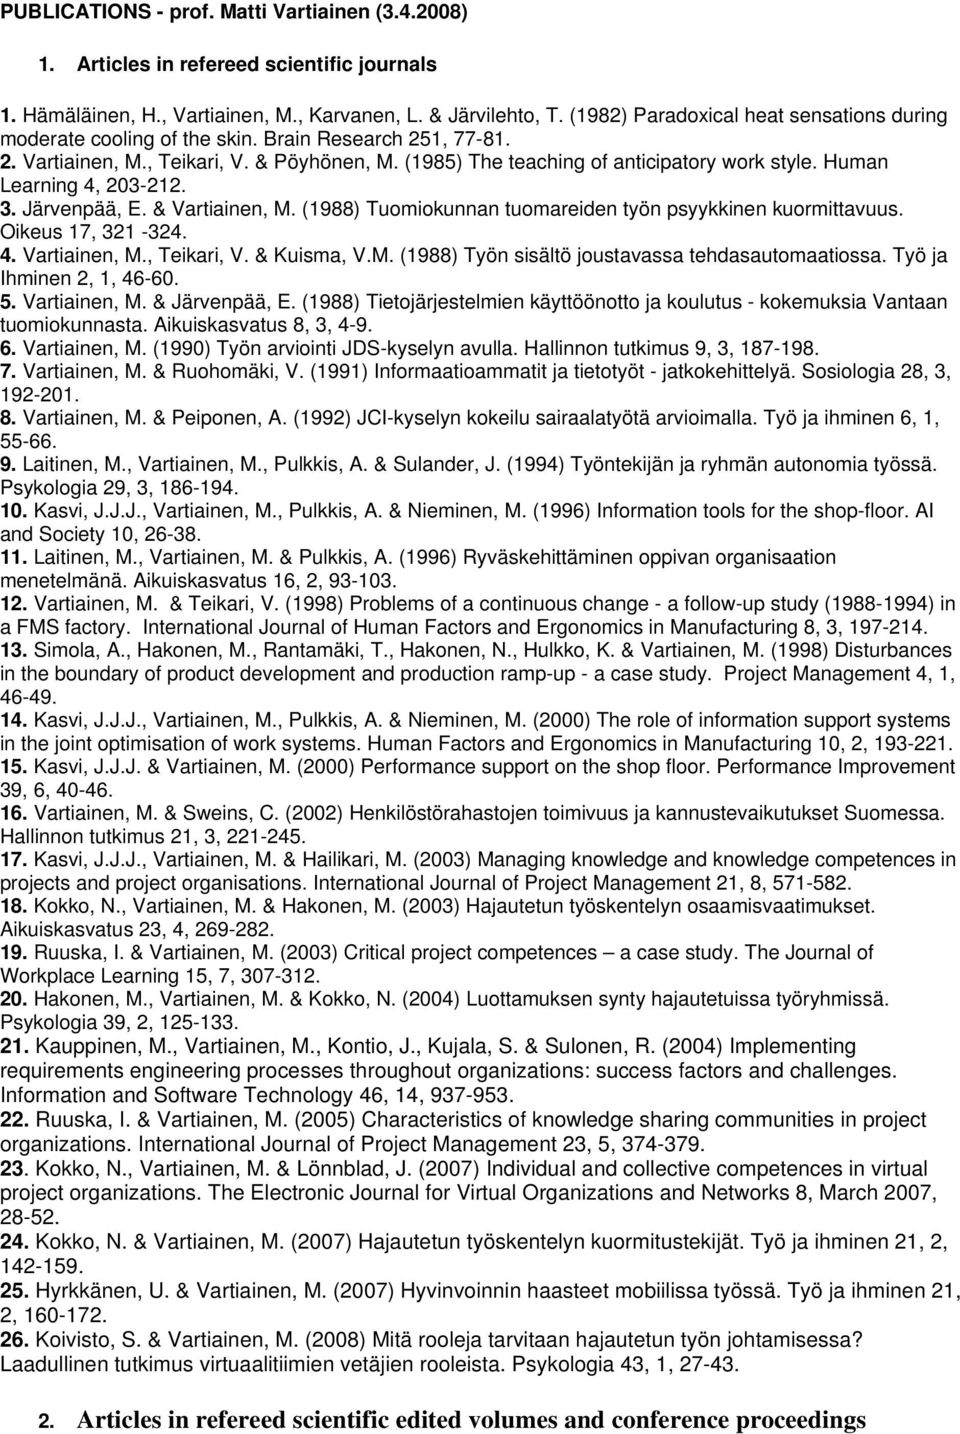 Human Learning 4, 203-212. 3. Järvenpää, E. & Vartiainen, M. (1988) Tuomiokunnan tuomareiden työn psyykkinen kuormittavuus. Oikeus 17, 321-324. 4. Vartiainen, M., Teikari, V. & Kuisma, V.M. (1988) Työn sisältö joustavassa tehdasautomaatiossa.